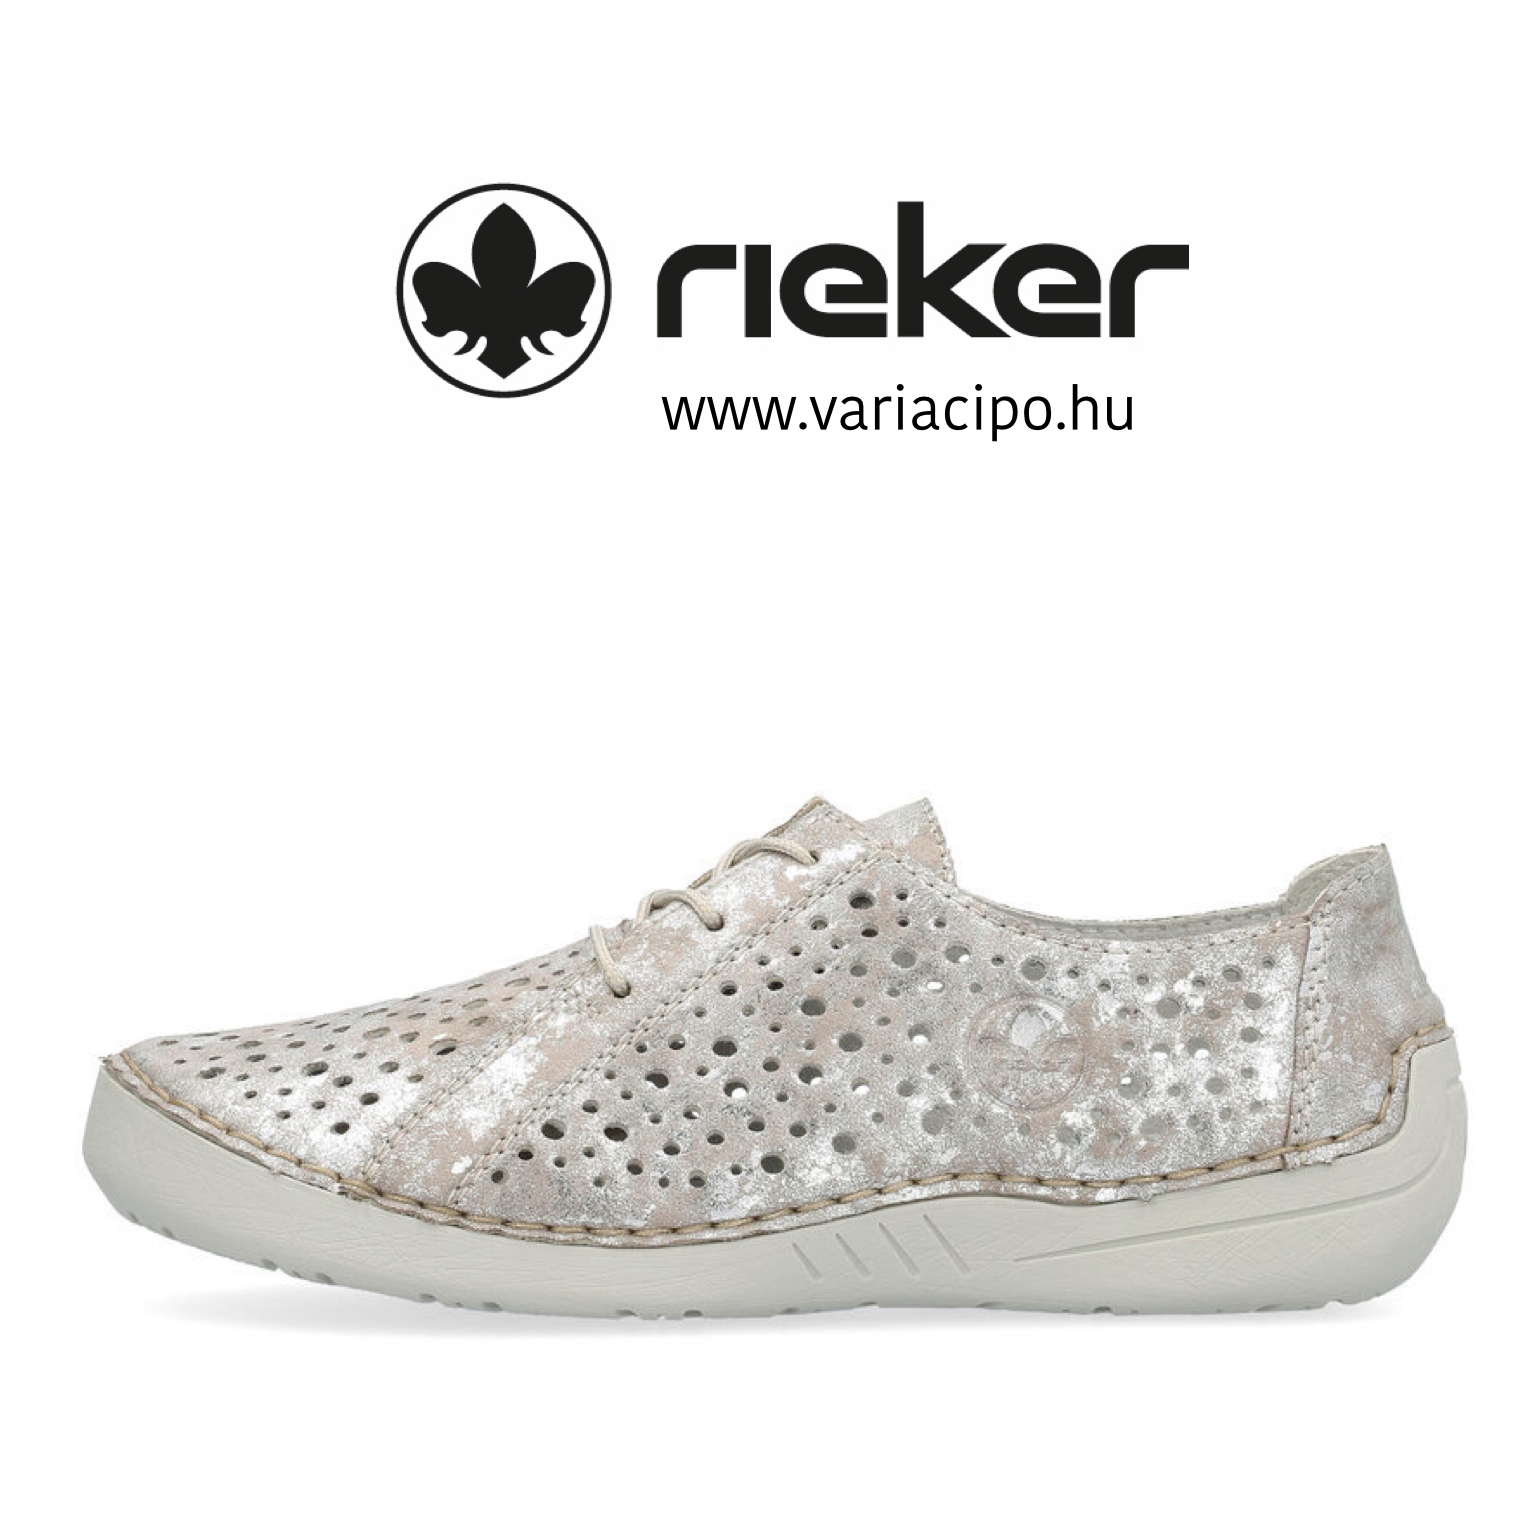 Fűzős Rieker nyári cipő, 52534-90 metallic